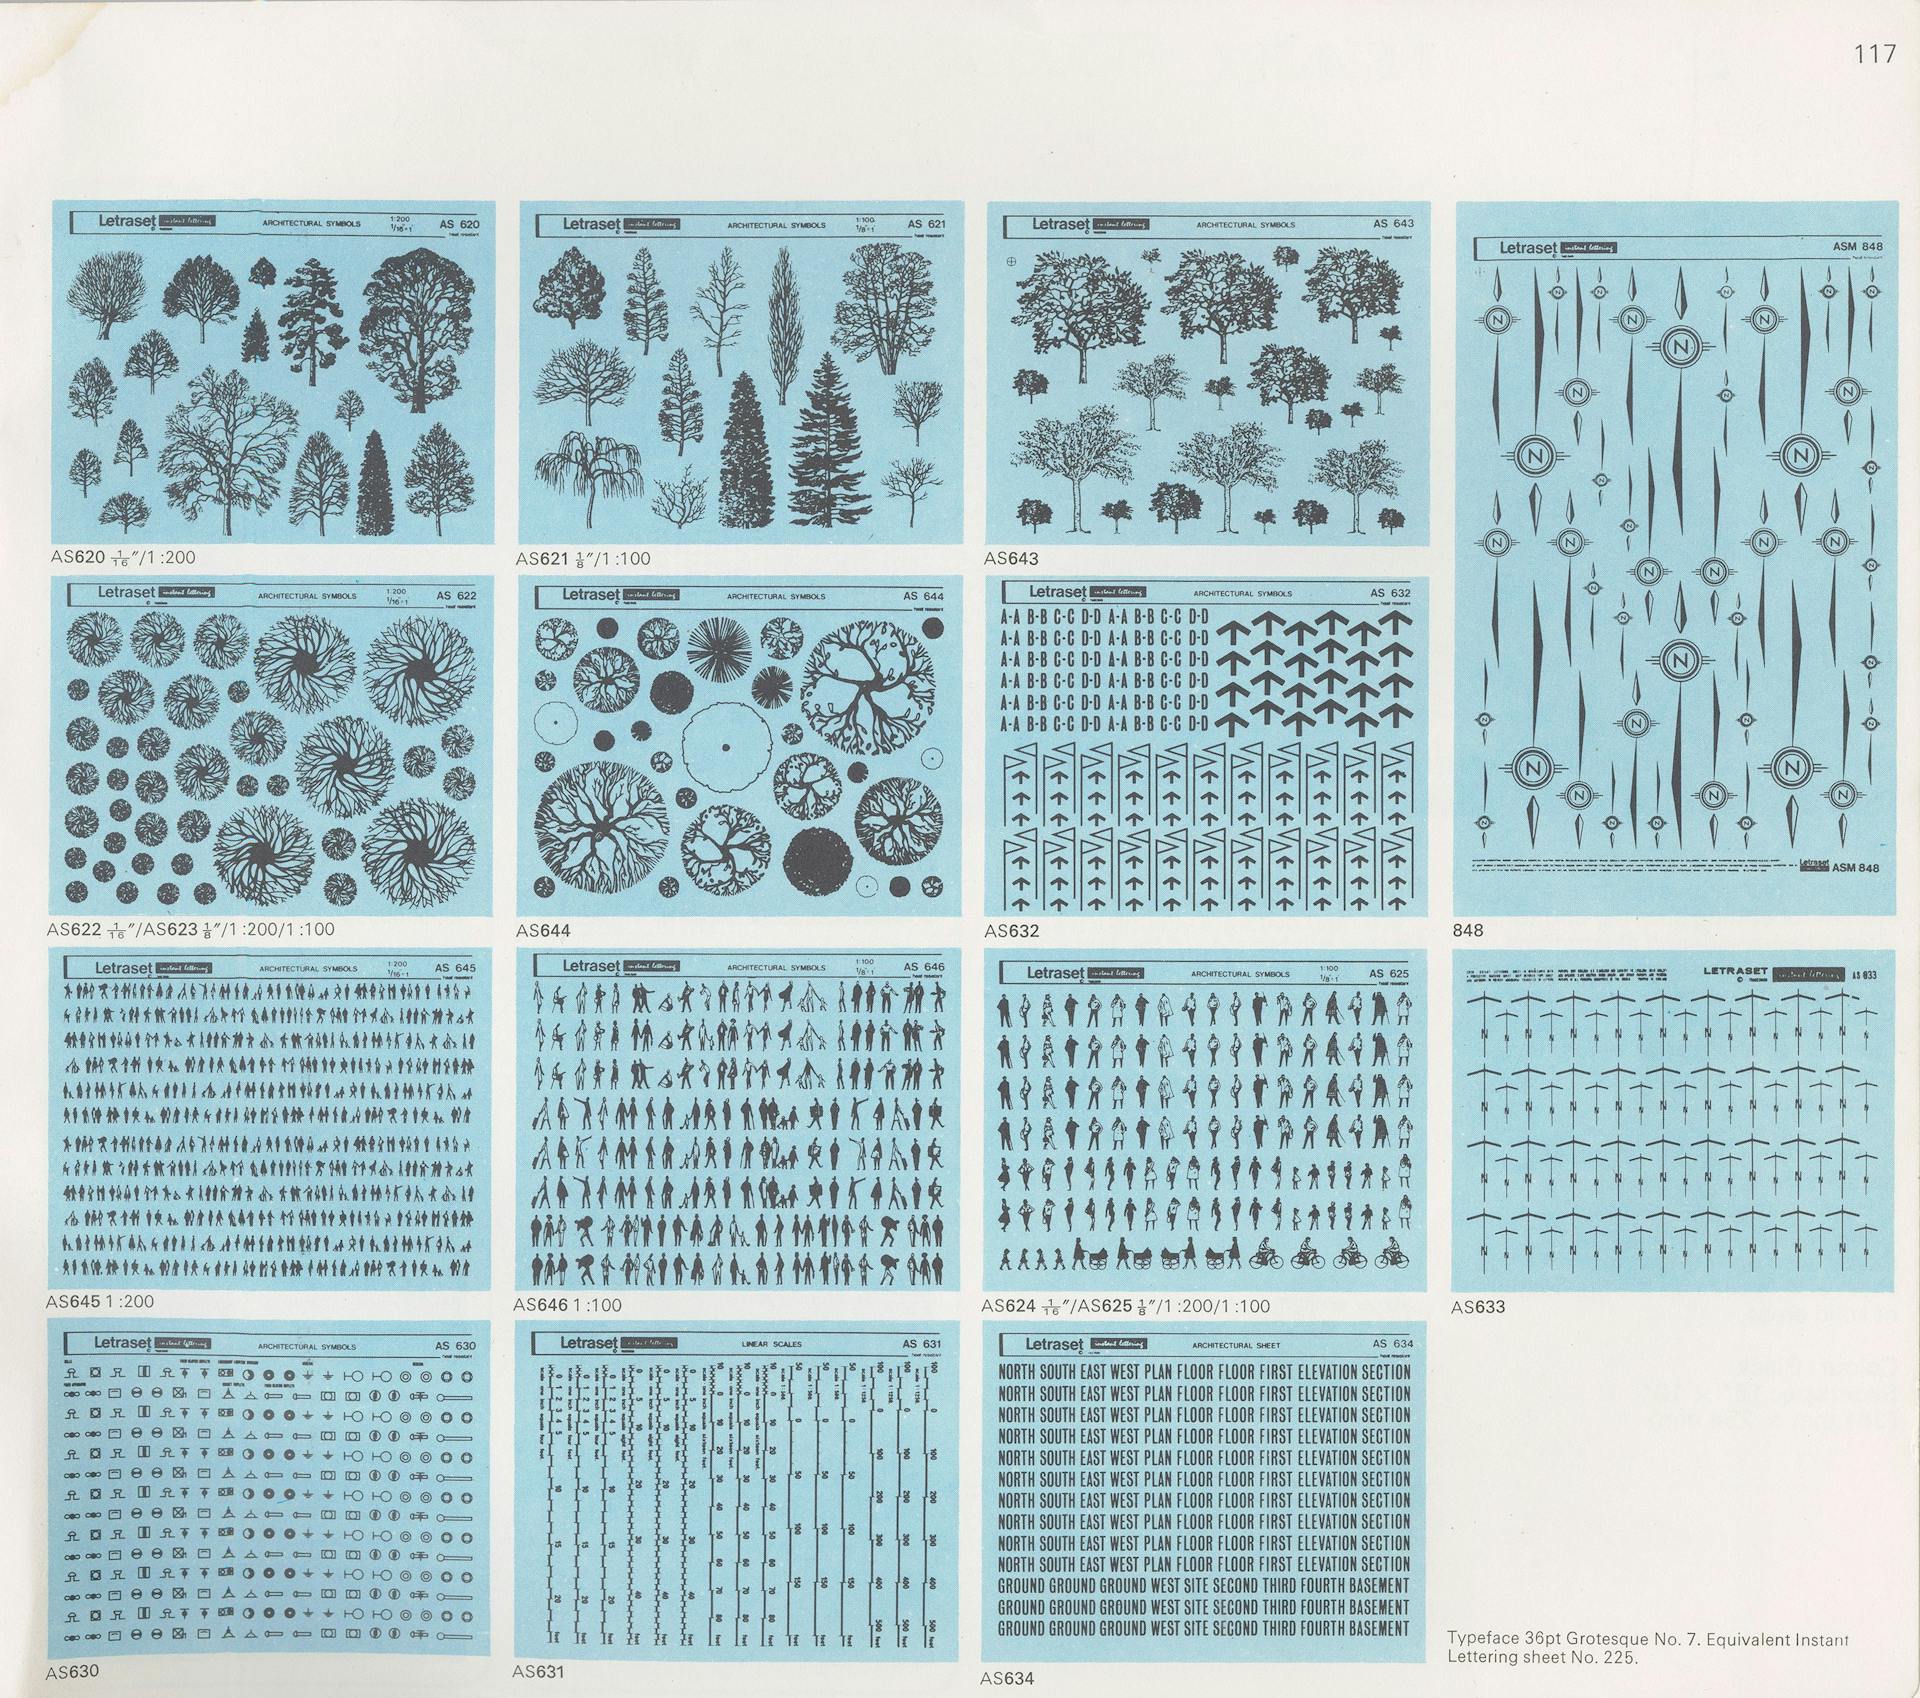 Speciaal voor architecten bracht Letraset deze voorbedrukte Zips uit met allerlei soorten bomen, figuren en tekens, ca. 1975. Bron: productcatalogus van Letraset, ca. 1975. Collectie Ellen Smit.  